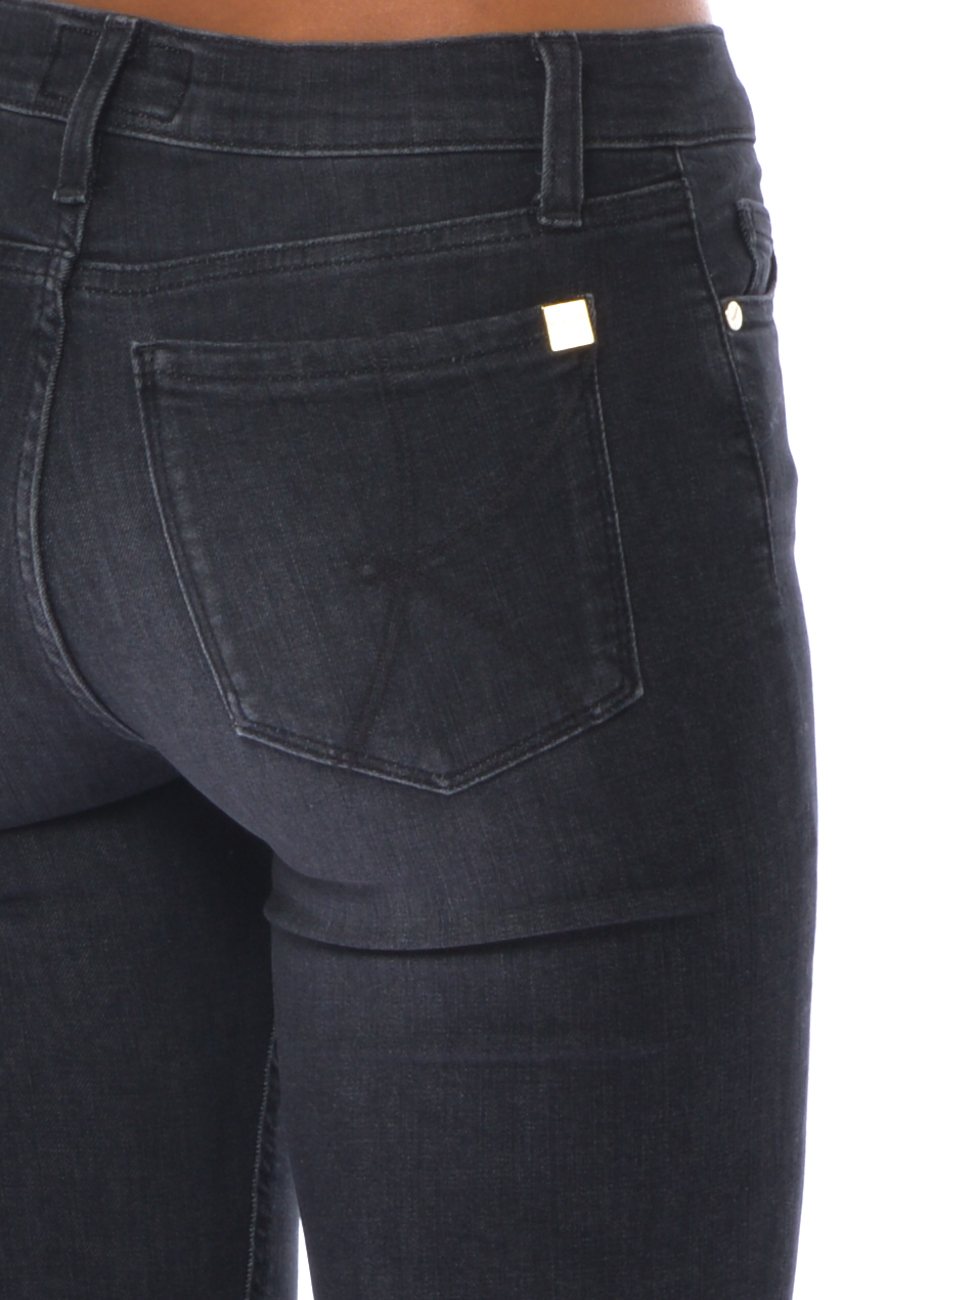 Jeans da cinque Kaos tasche stone donna washed - OI6BL002